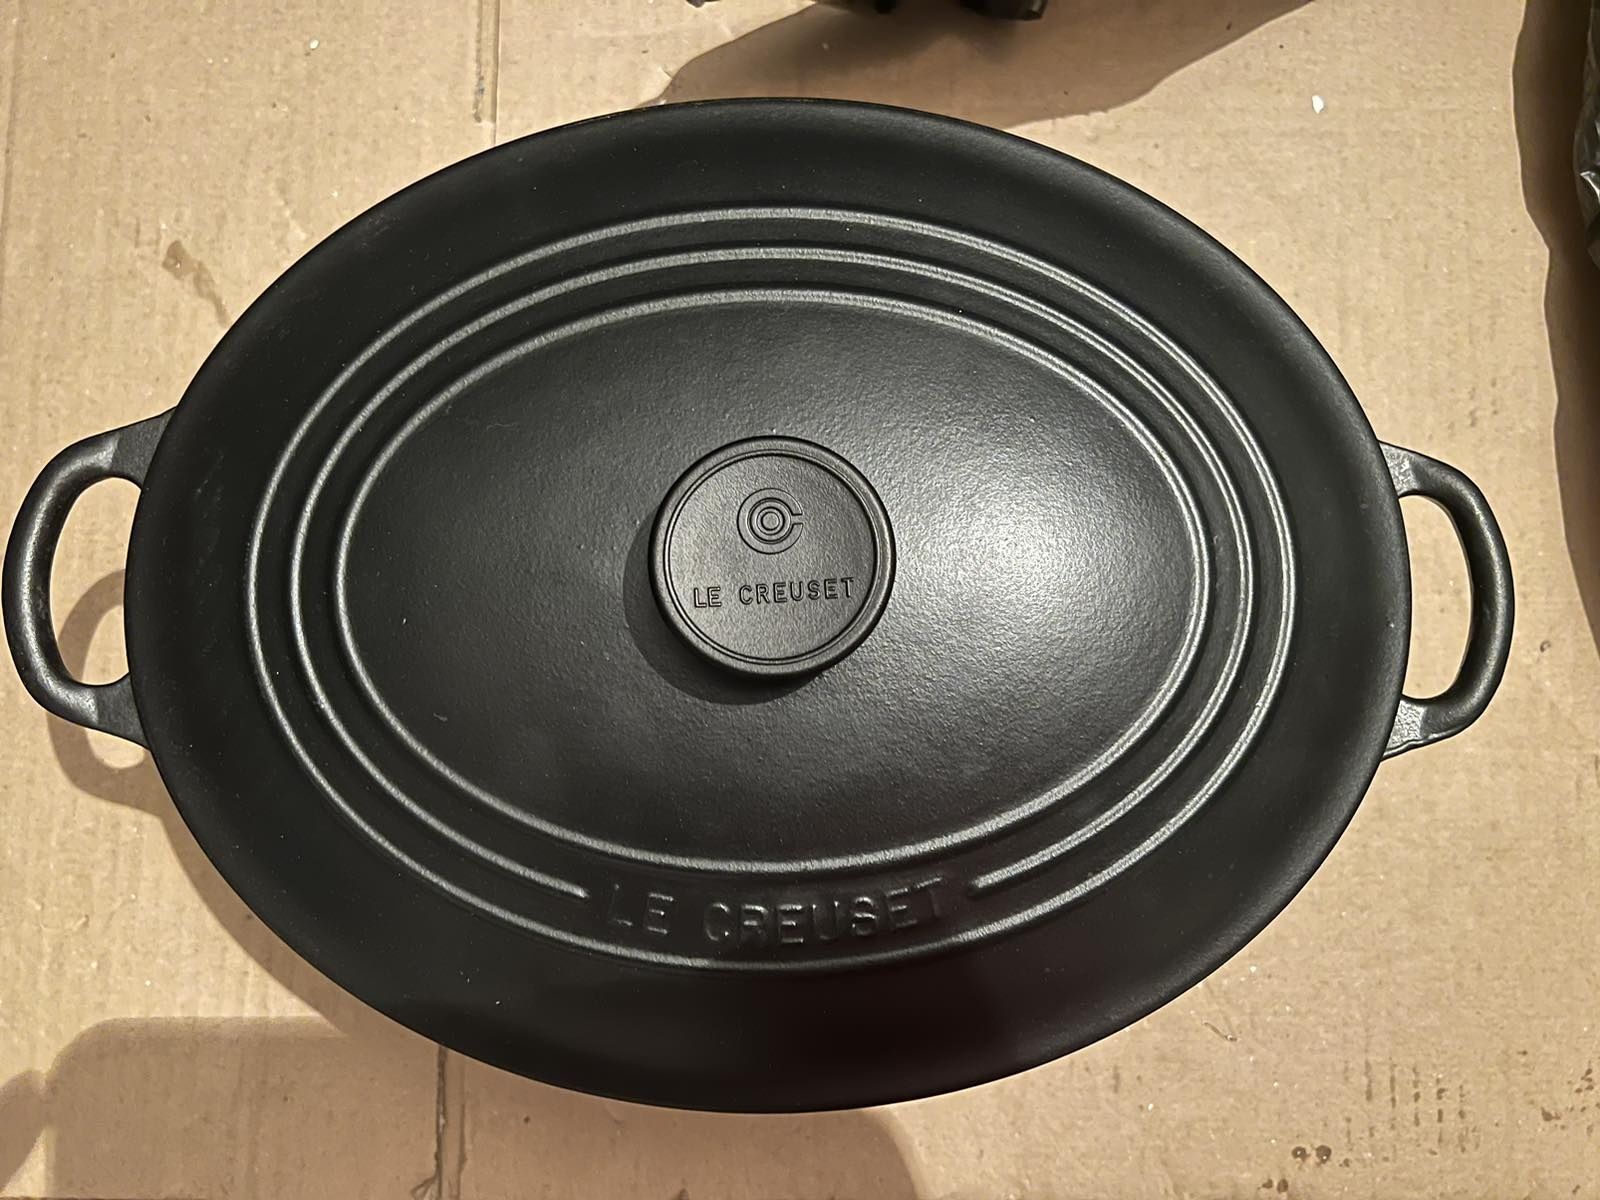 Le Creuset - oval casserole oven / 31 cm цвят: Черен Мат